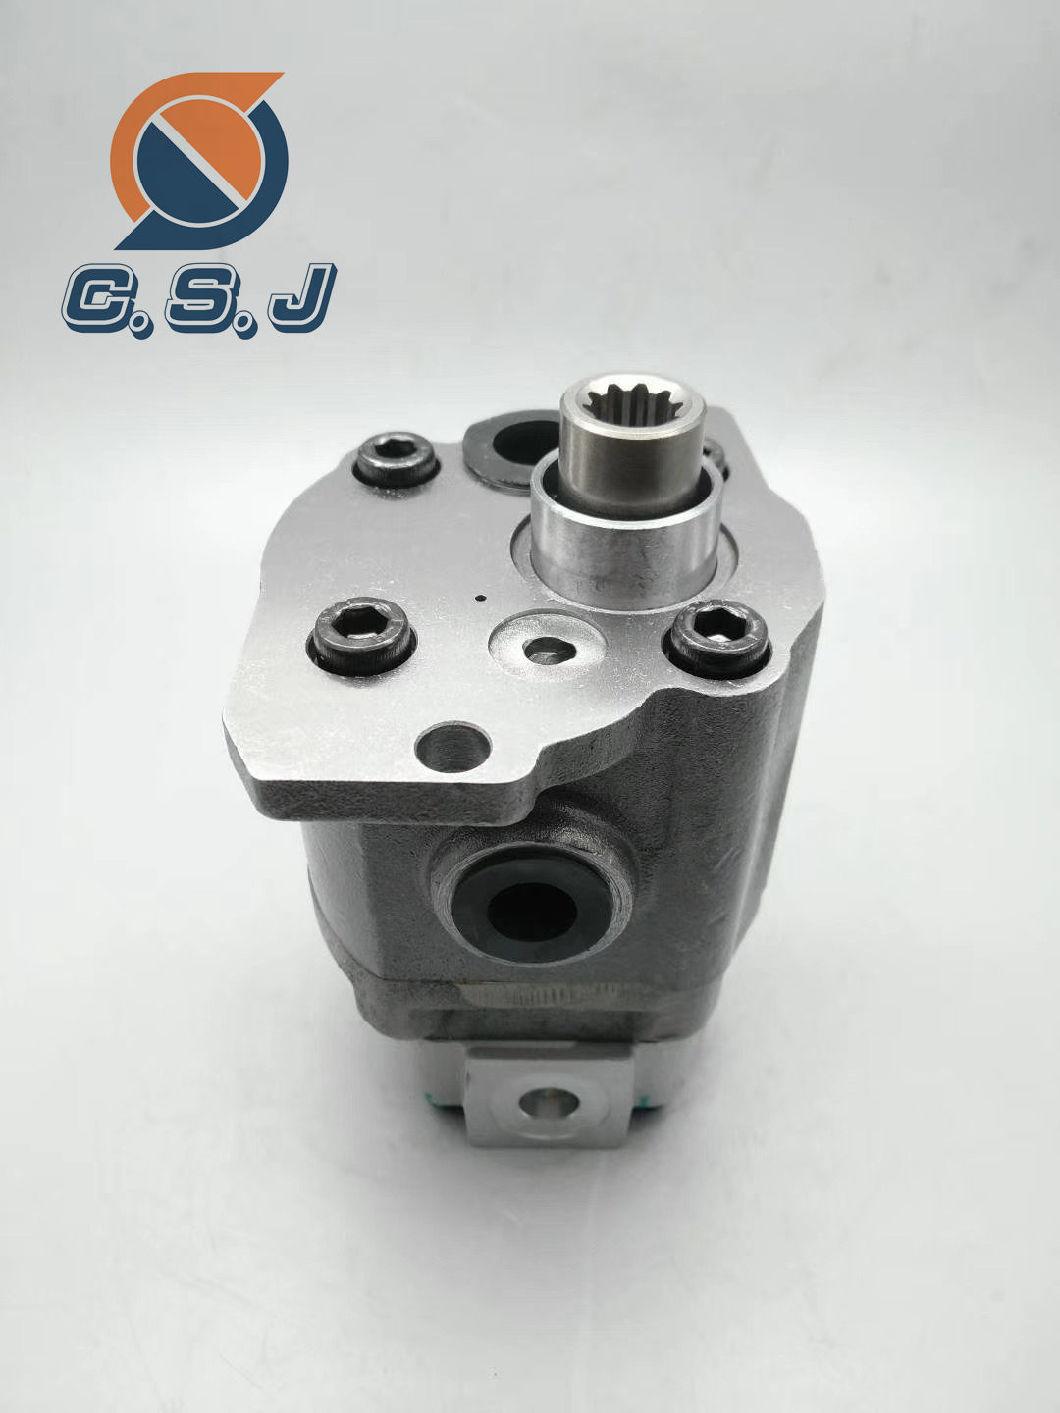 Ap2d25/28 Rexroth Gear Pump for R60/Dh55